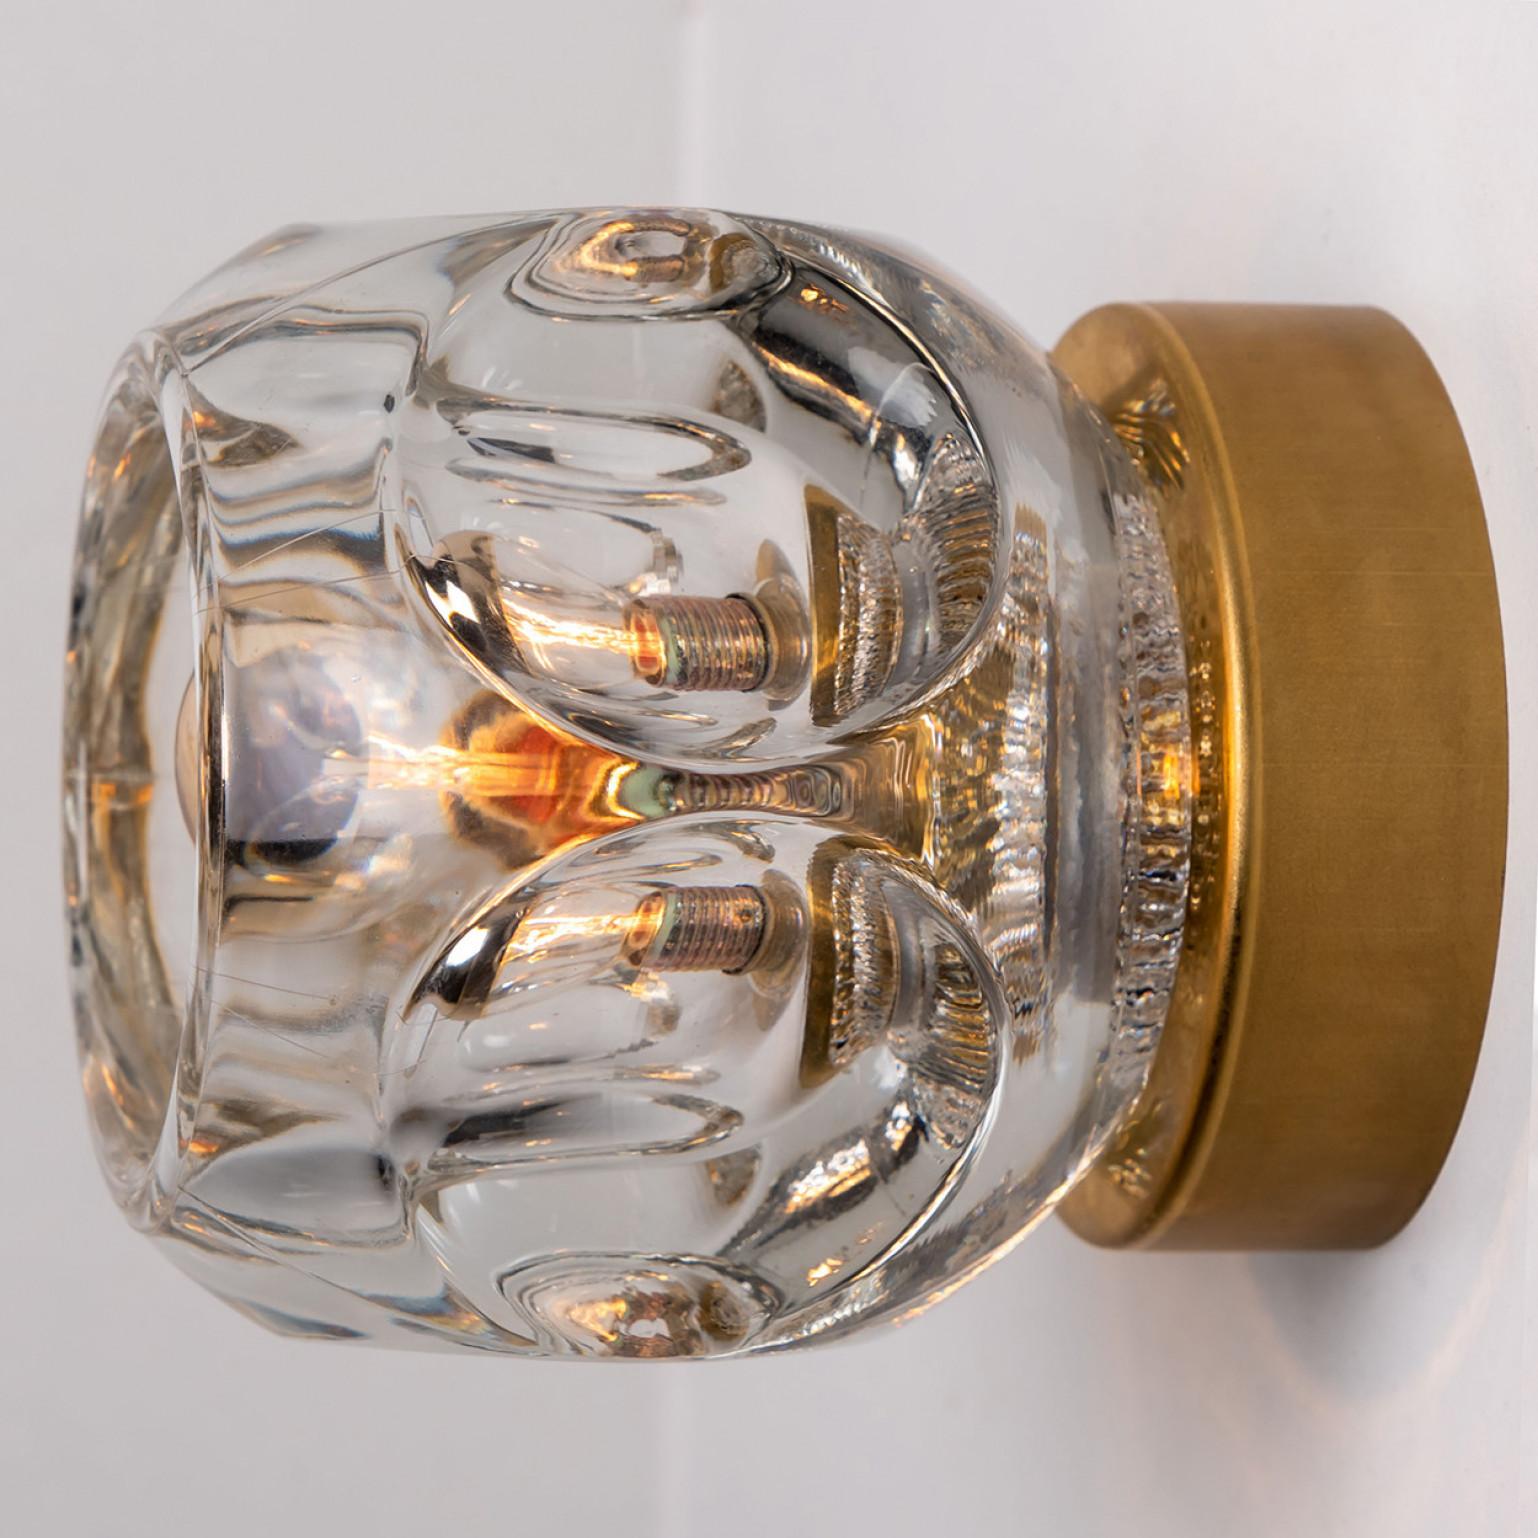 Mehrere originale Glaswandleuchter oder Unterputzleuchten Cosack Lights, Deutschland, 1970er Jahre

Originelle modernistische Wandleuchte aus den 1970er Jahren mit vier Lichtelementen aus Glas. Diese Leuchte wurde von Cosack Lights entworfen und